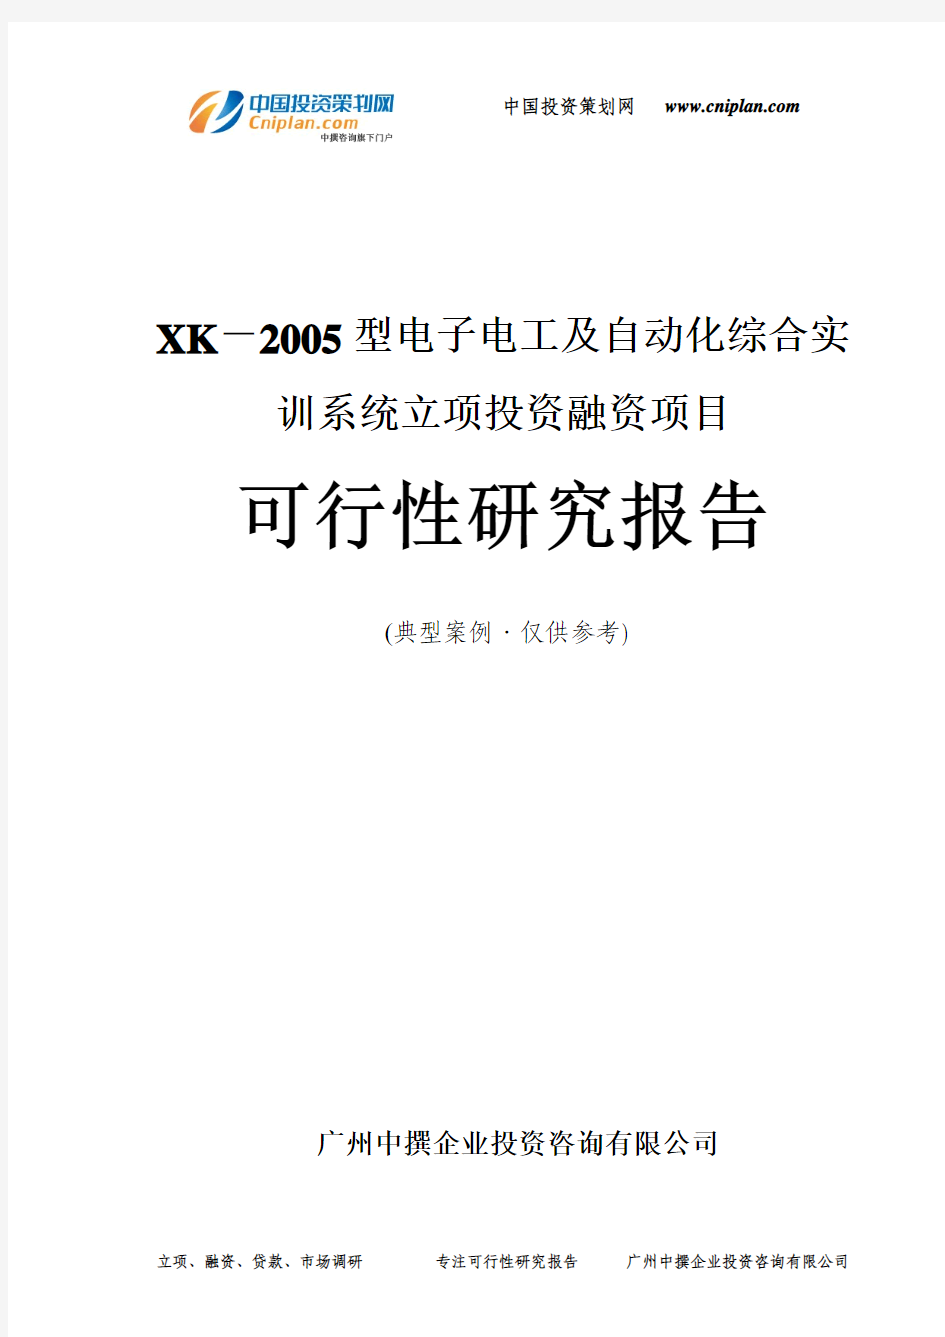 XK-2005型电子电工及自动化综合实训系统融资投资立项项目可行性研究报告(中撰咨询)